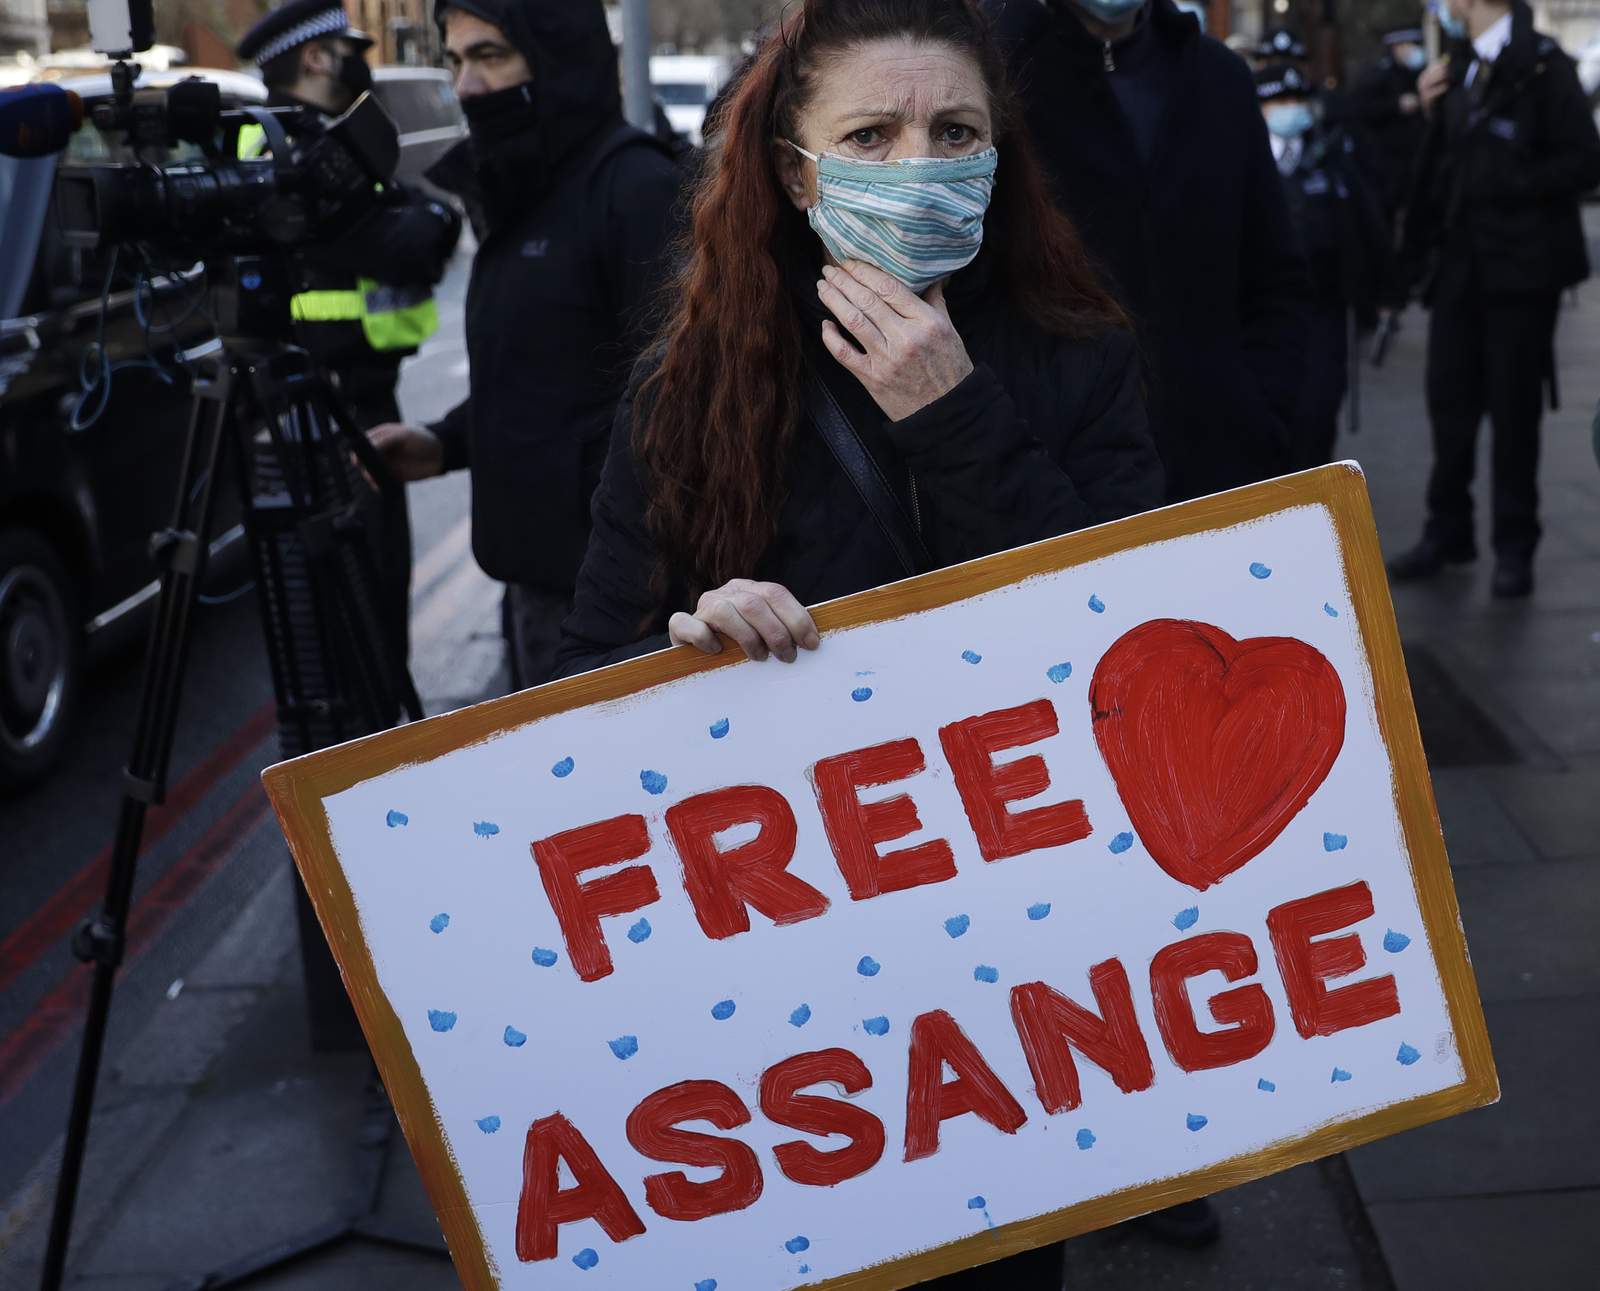 WikiLeaks founder Assange denied bail in UK